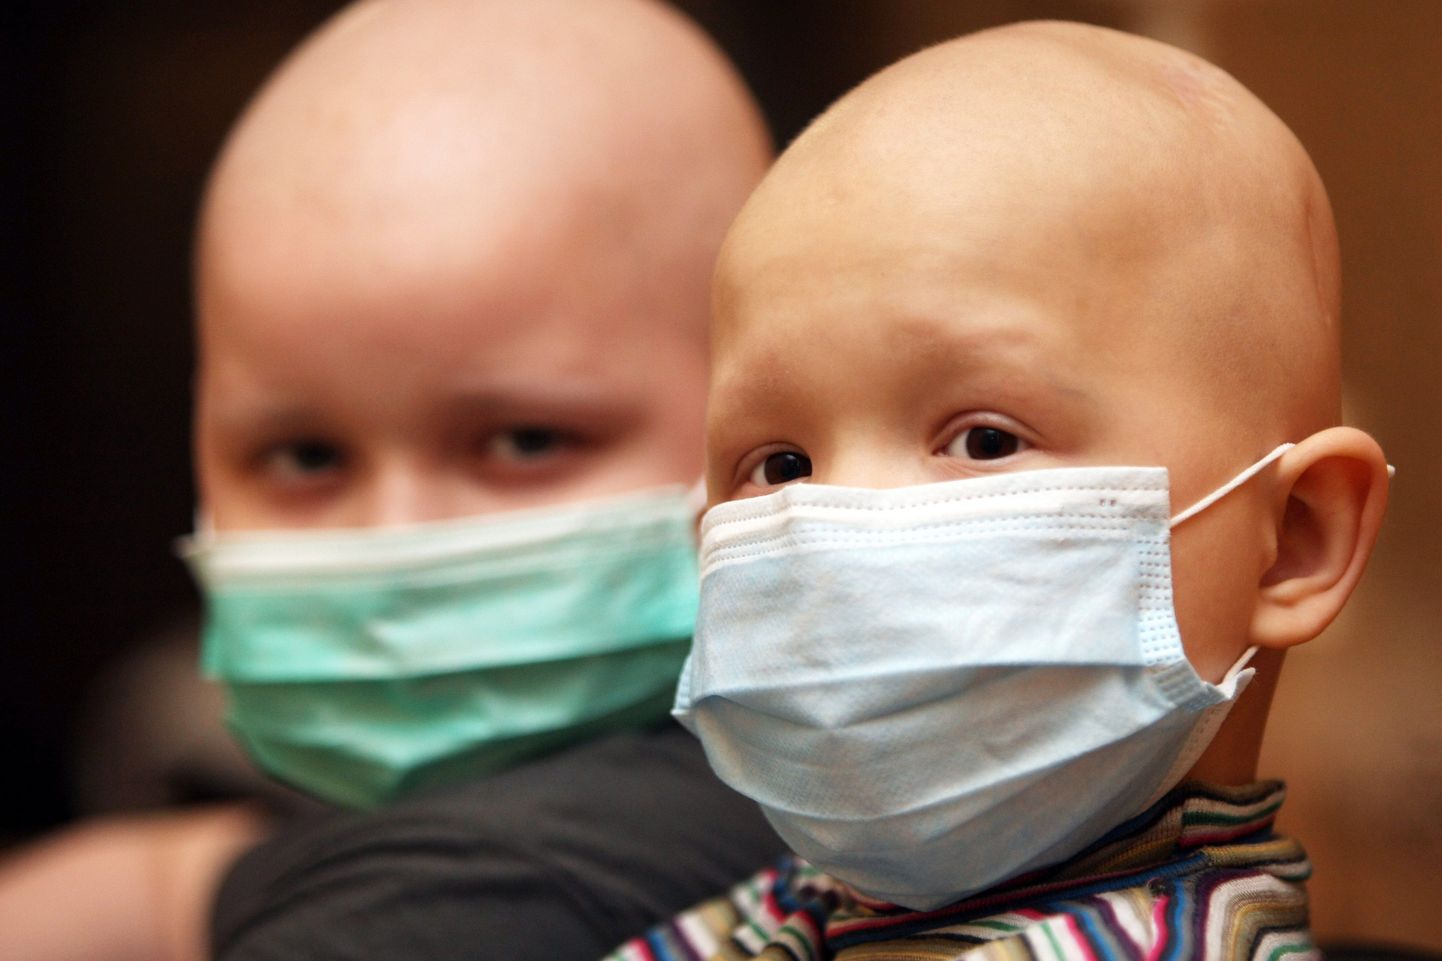 Uue teraapia abil võib tulevikus olla võimalik eelkõige ravida leukeemiahaigeid lapsi.